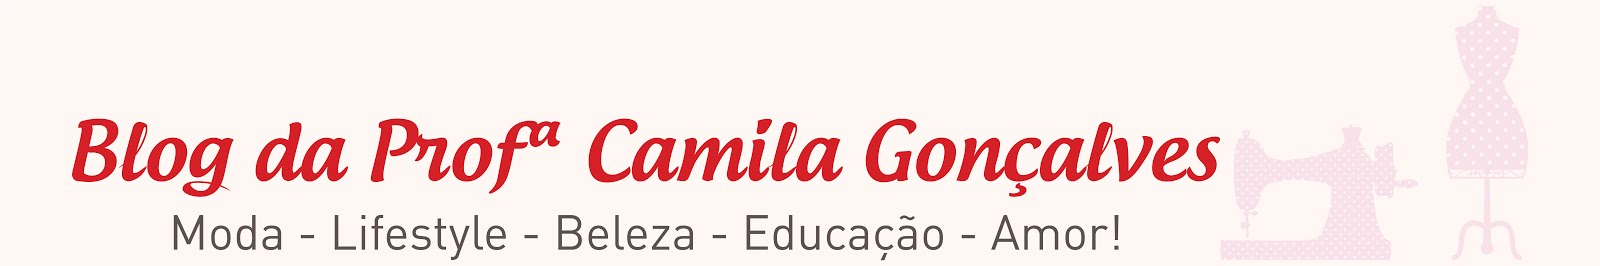 Blog da Profª Camila Gonçalves